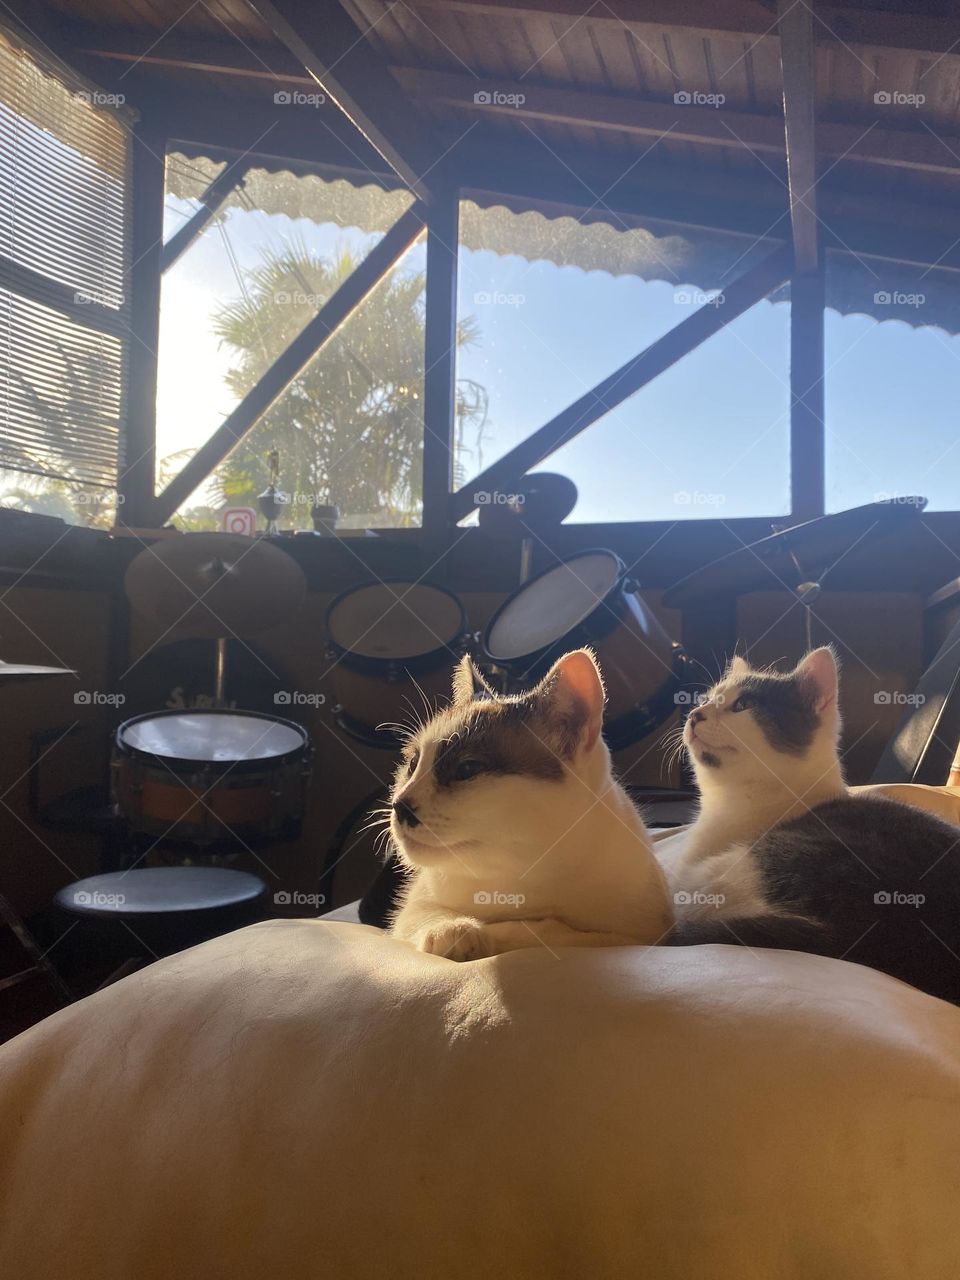 Sunbath with Branca and Joji ❤️